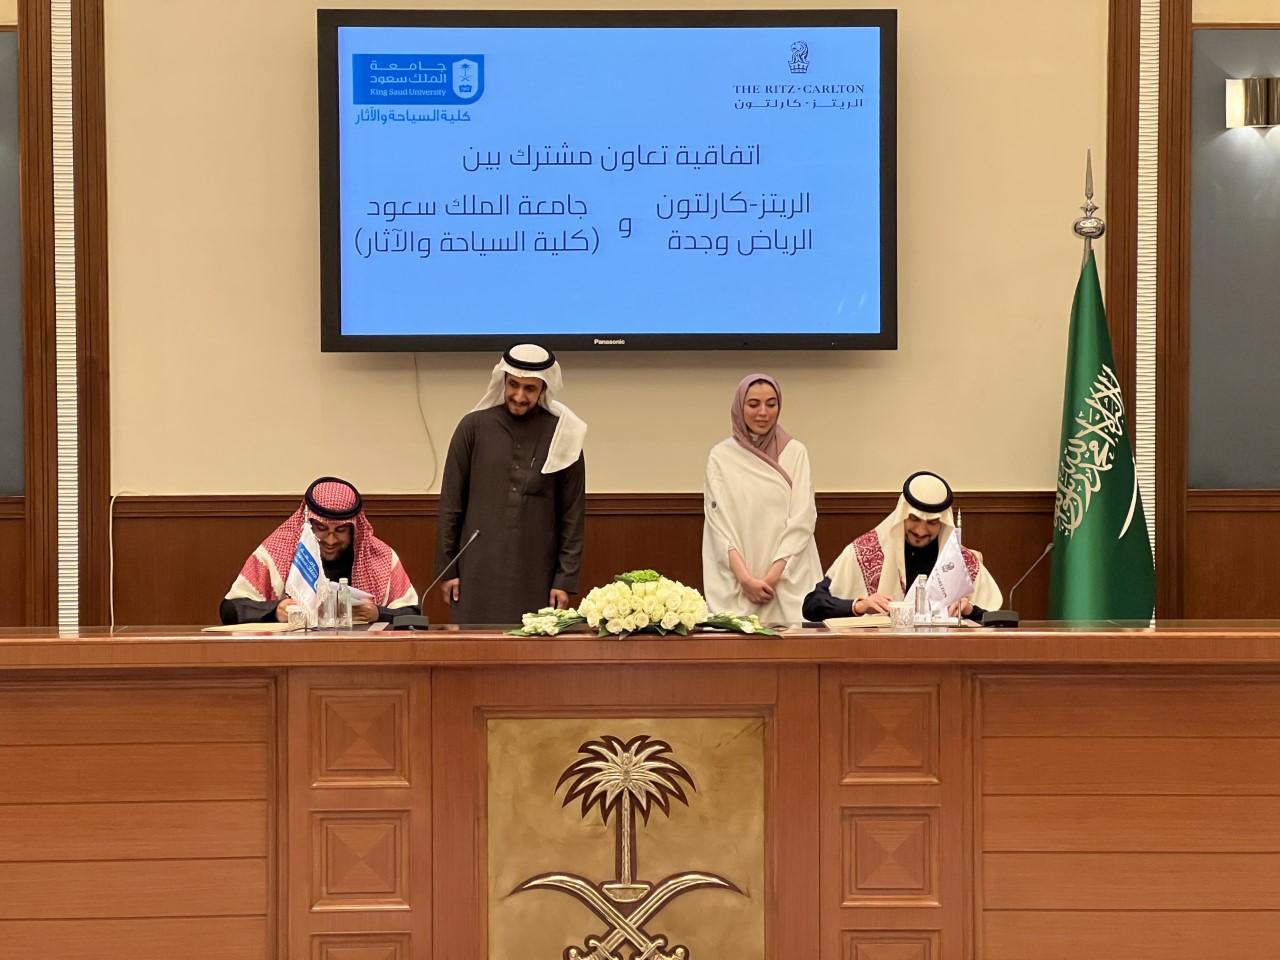 الريتز-كارلتون يوقع اتفاقية تعاون مع جامعة الملك سعود لتدريب الطلبة وتأهيلهم للعمل في القطاع السياحي